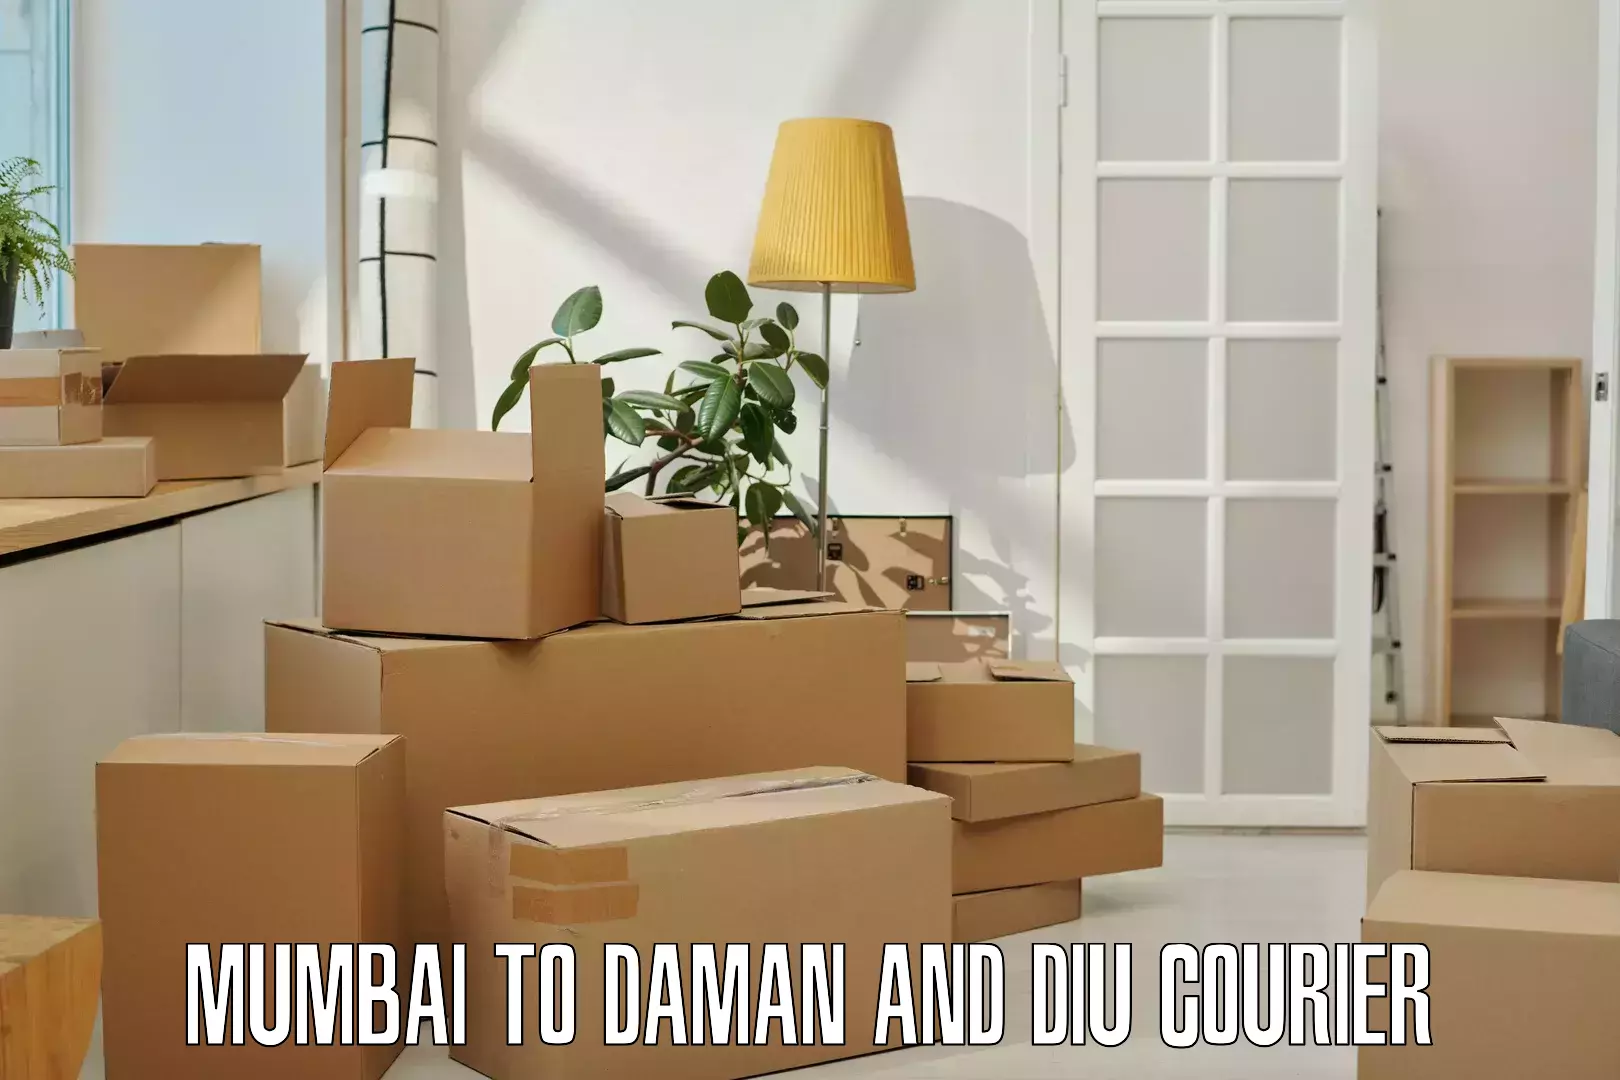 Express logistics providers in Mumbai to Daman and Diu